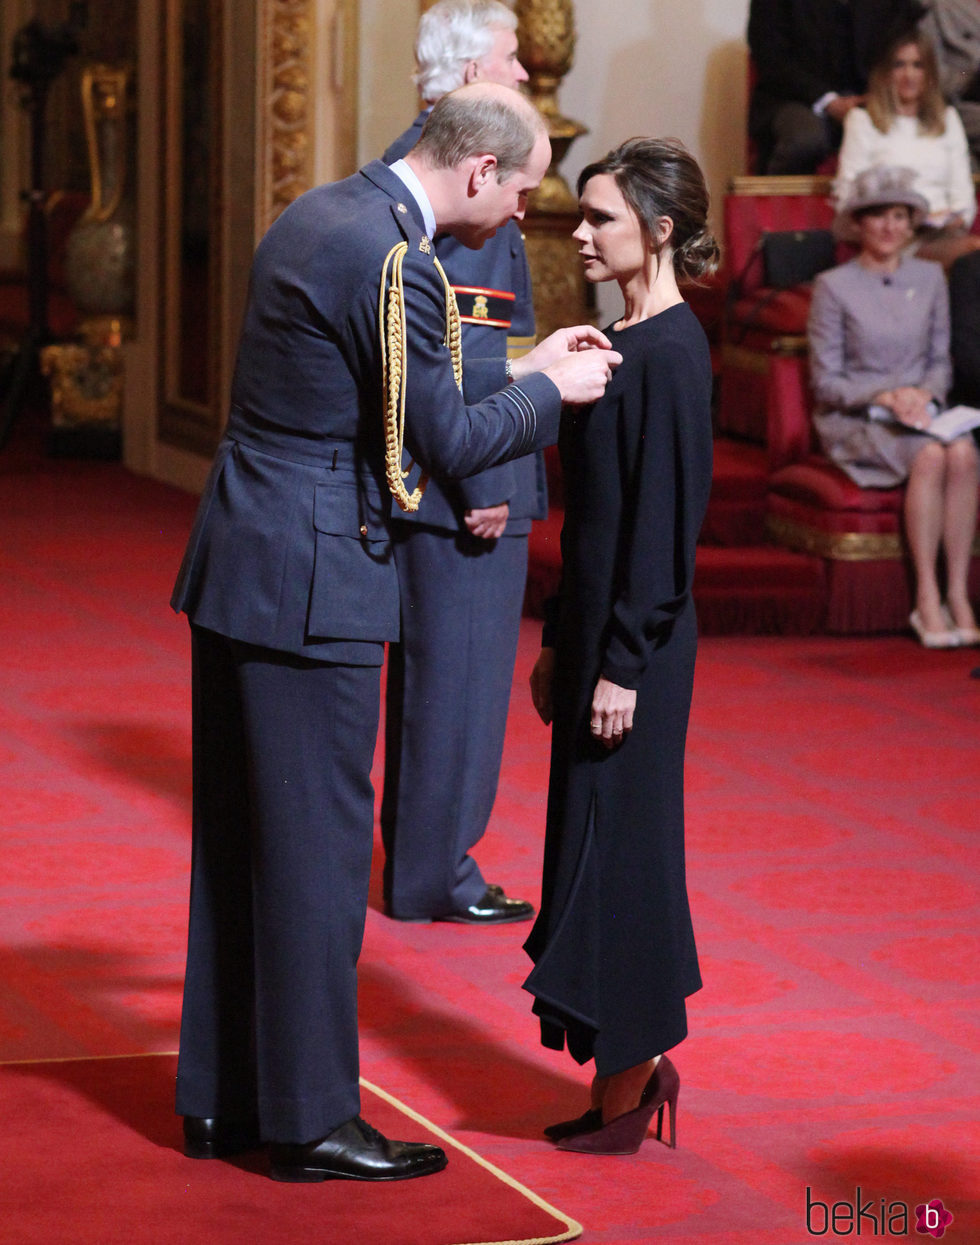 Victoria Beckham recibe la condecoración de la Orden del Imperio Británico